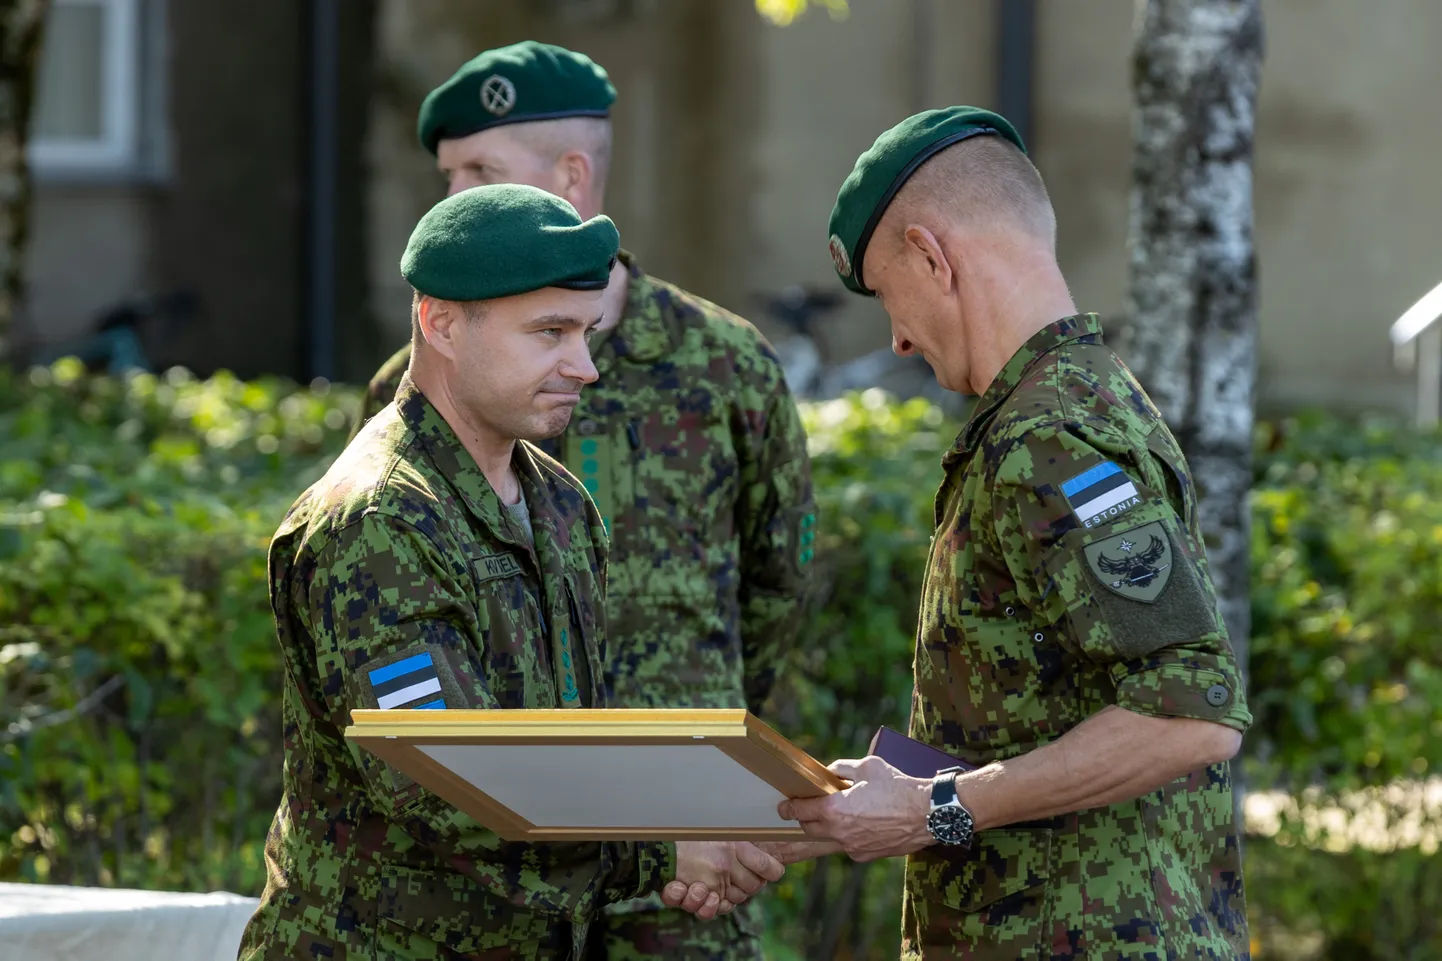 Kaitseväe luurekeskuse senine ülem kolonel Margo Grosberg (paremal) andis neljapäeval üksuse juhtimise üle kolonel Ants Kiviseljale (vasakul).